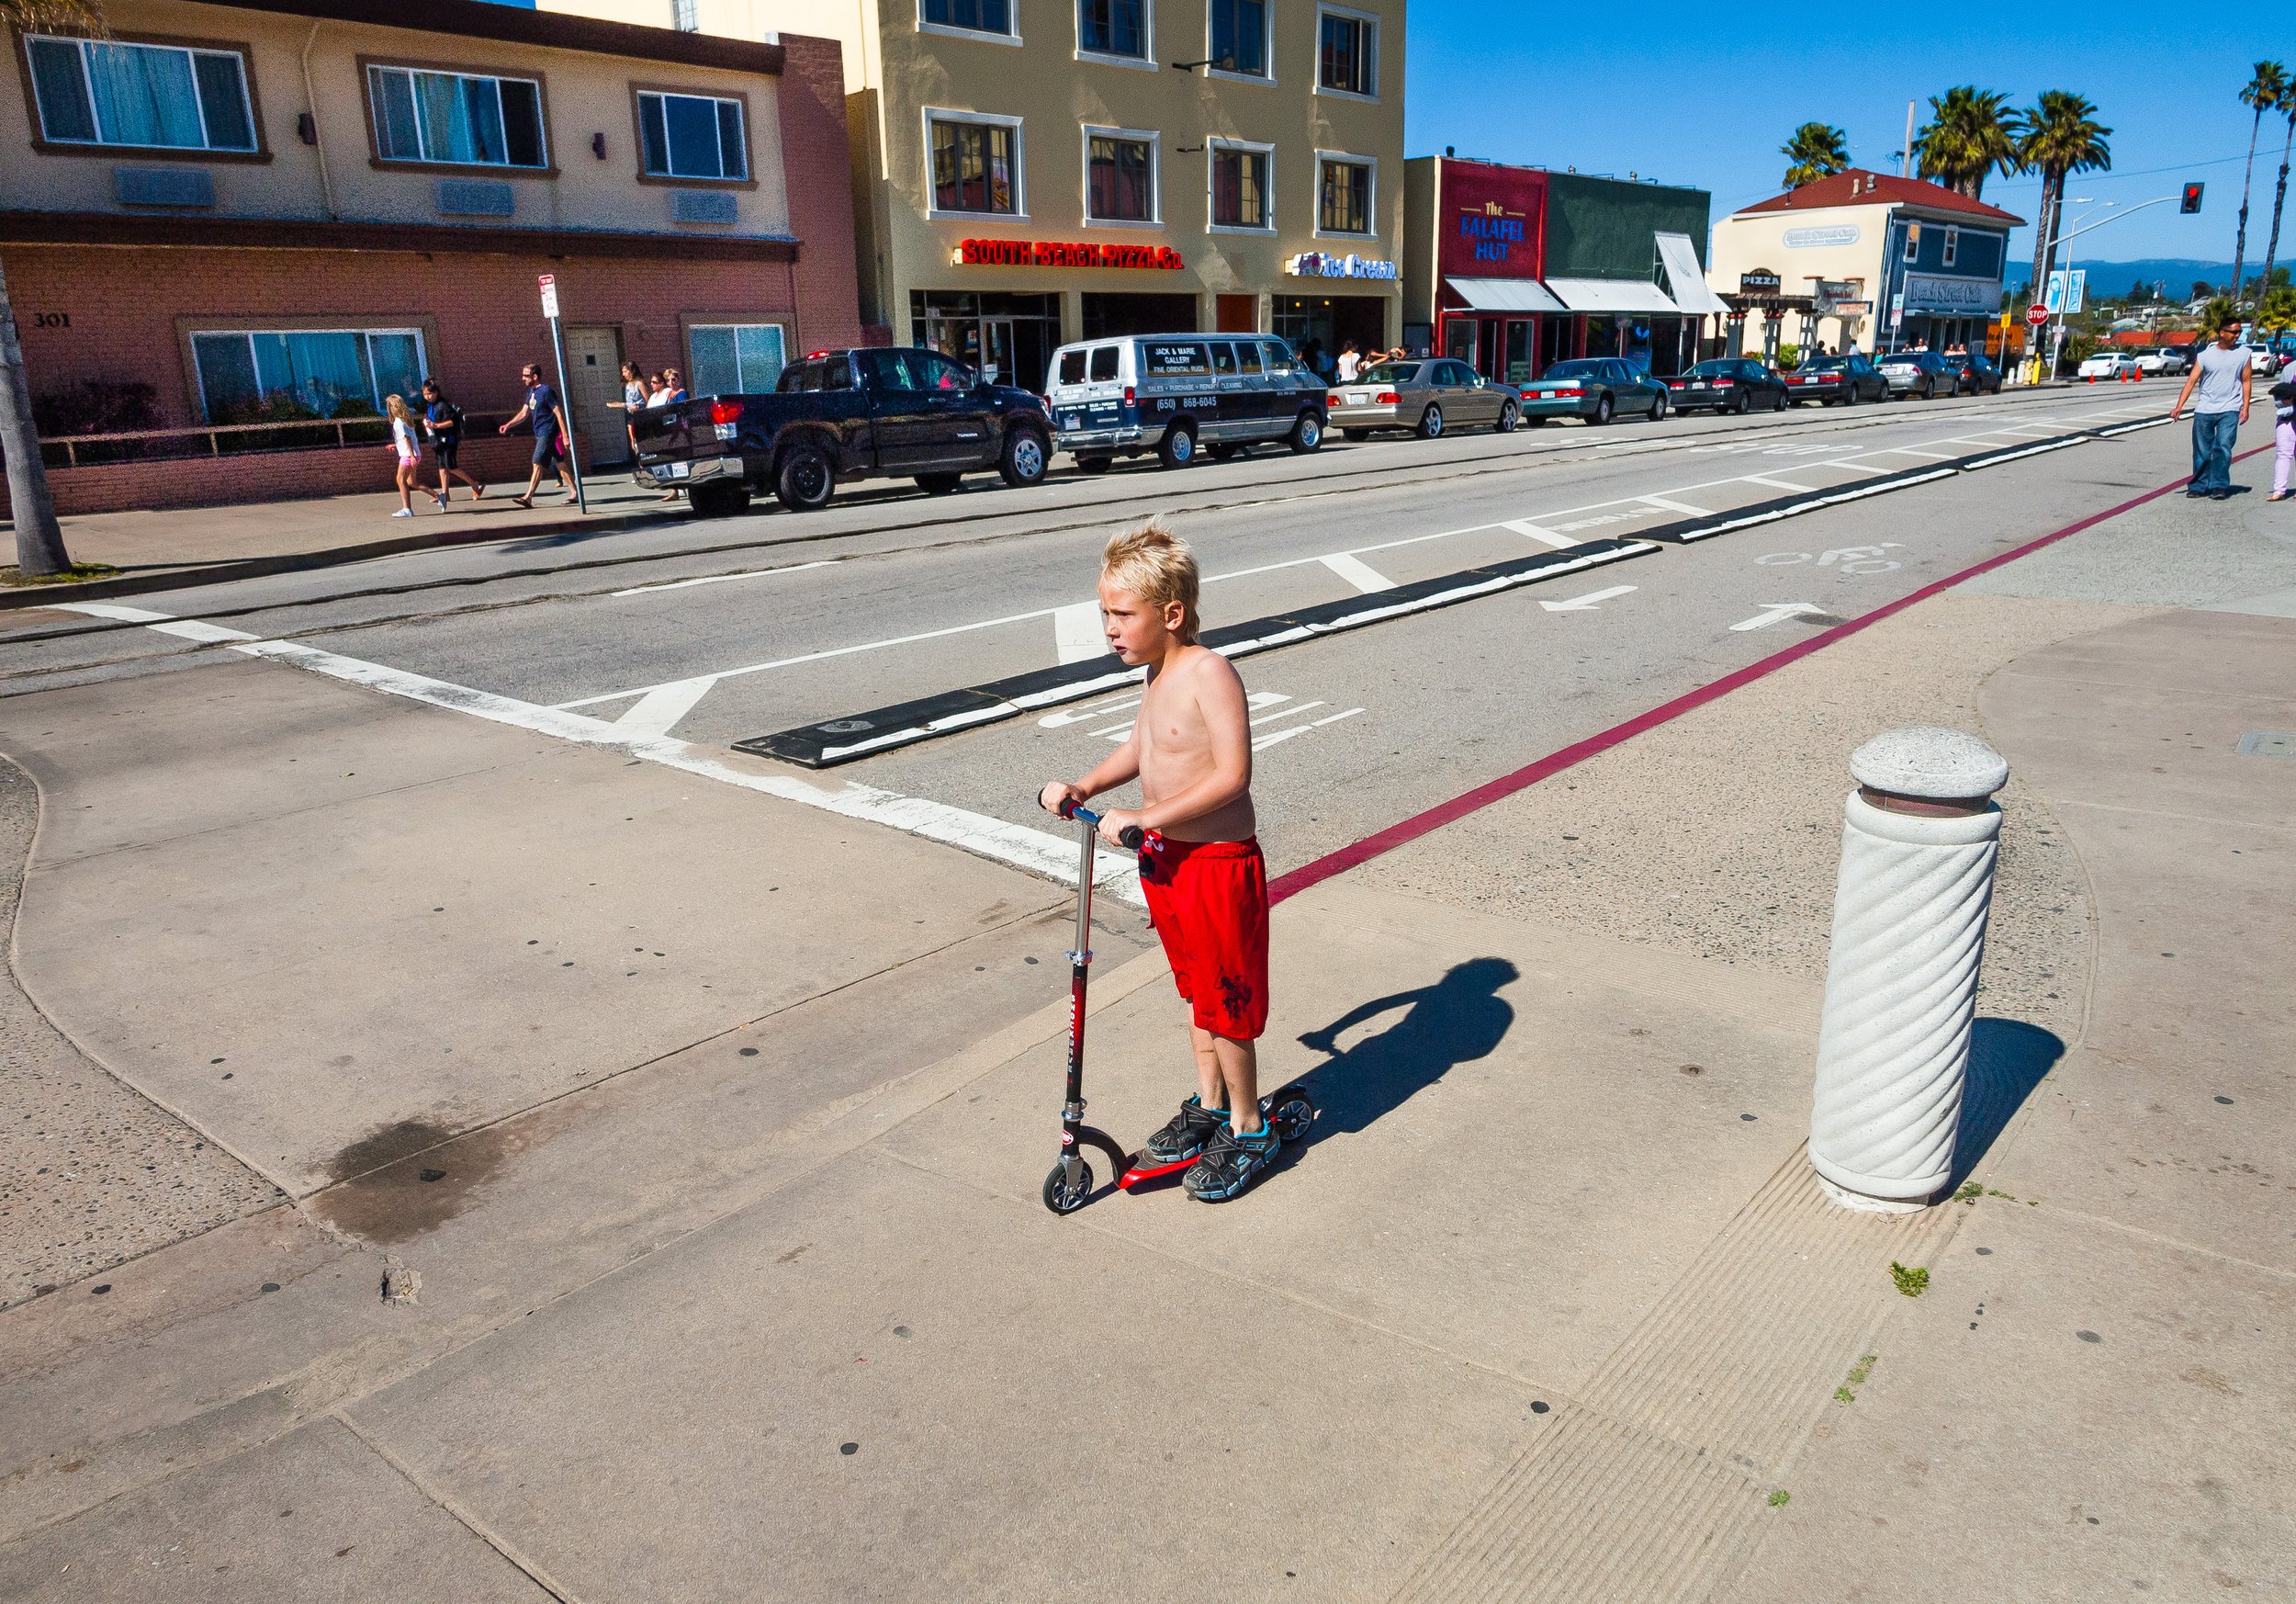 Boy With Scooter, Santa Cruz, 2013